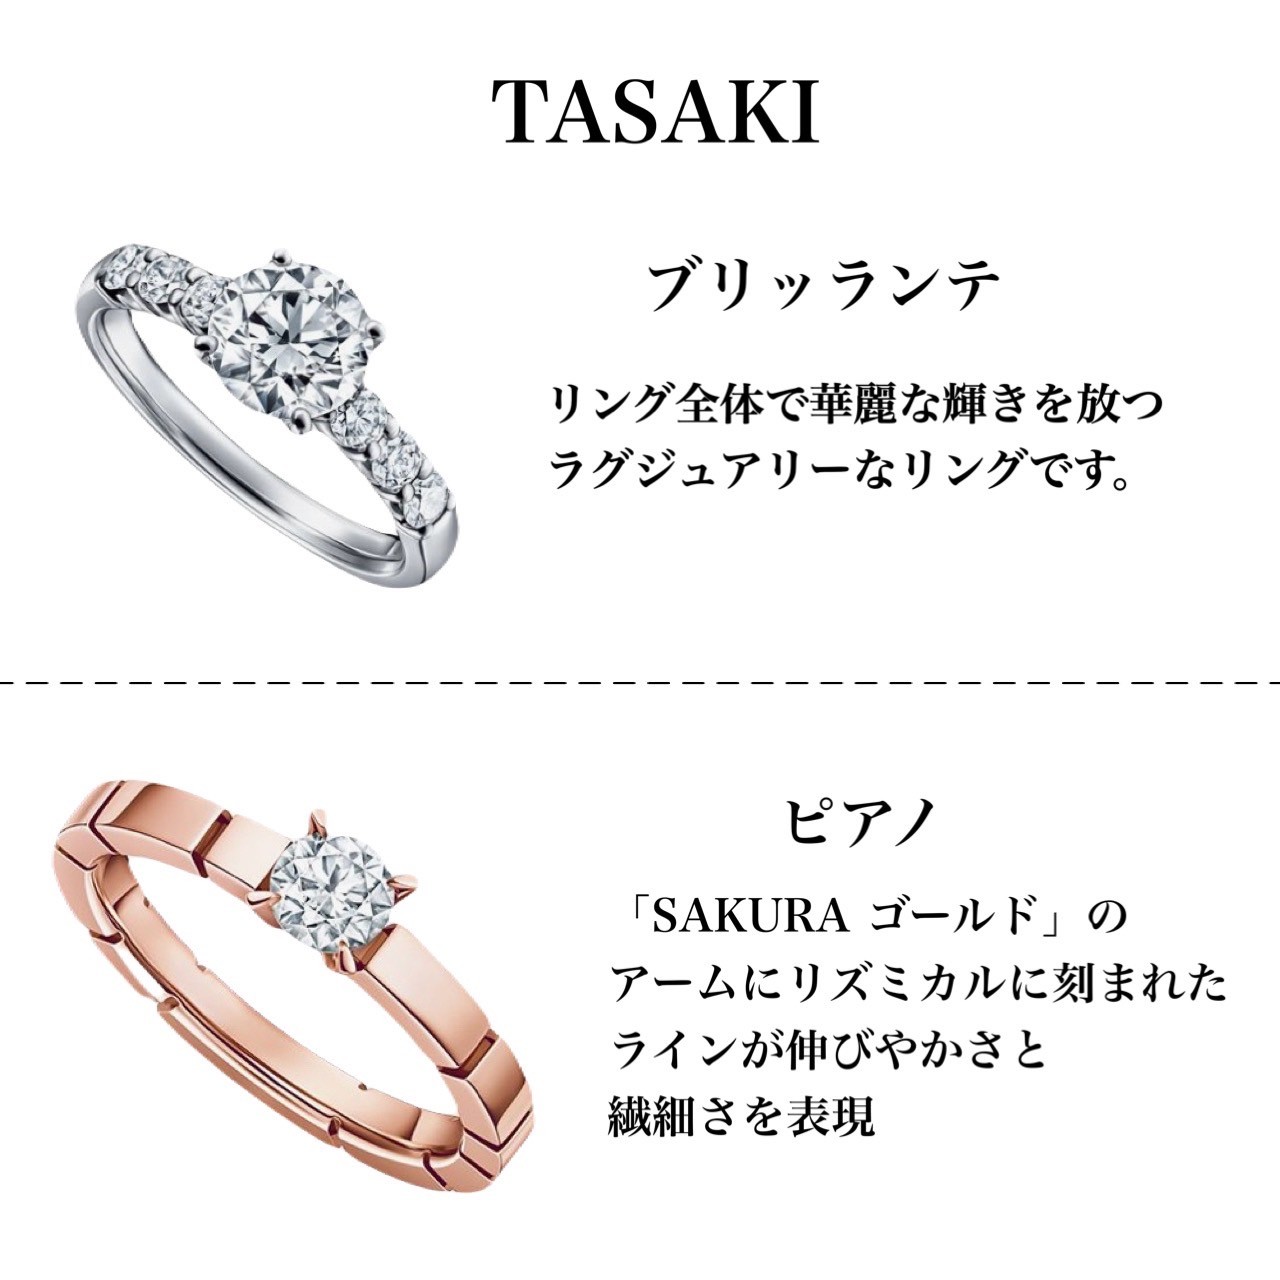 TASAKI（タサキ）の婚約指輪